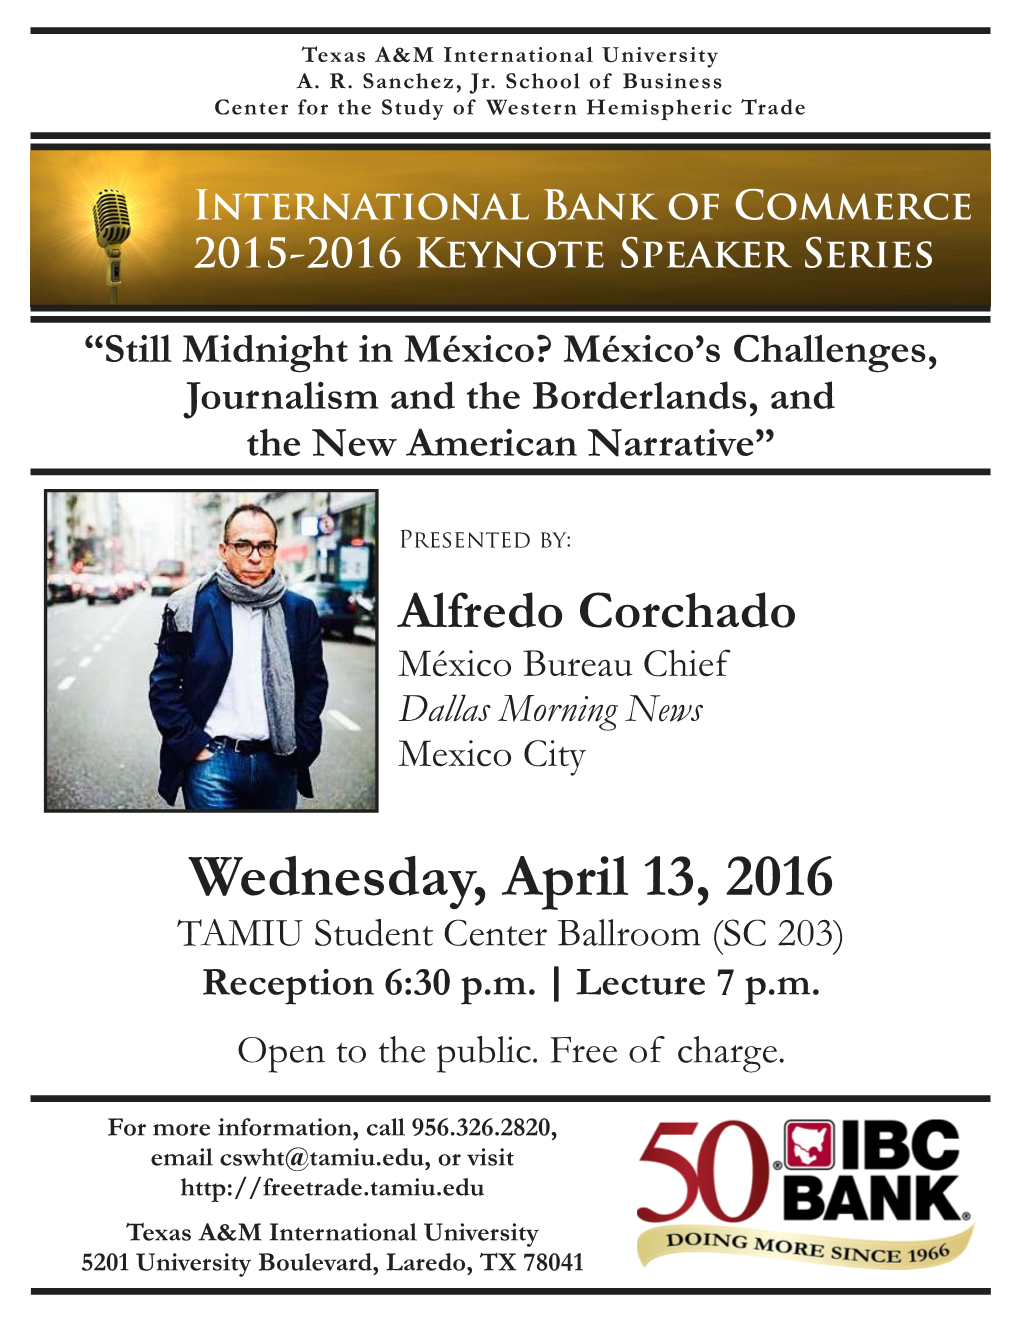 Alfredo Corchado México Bureau Chief Dallas Morning News Mexico City